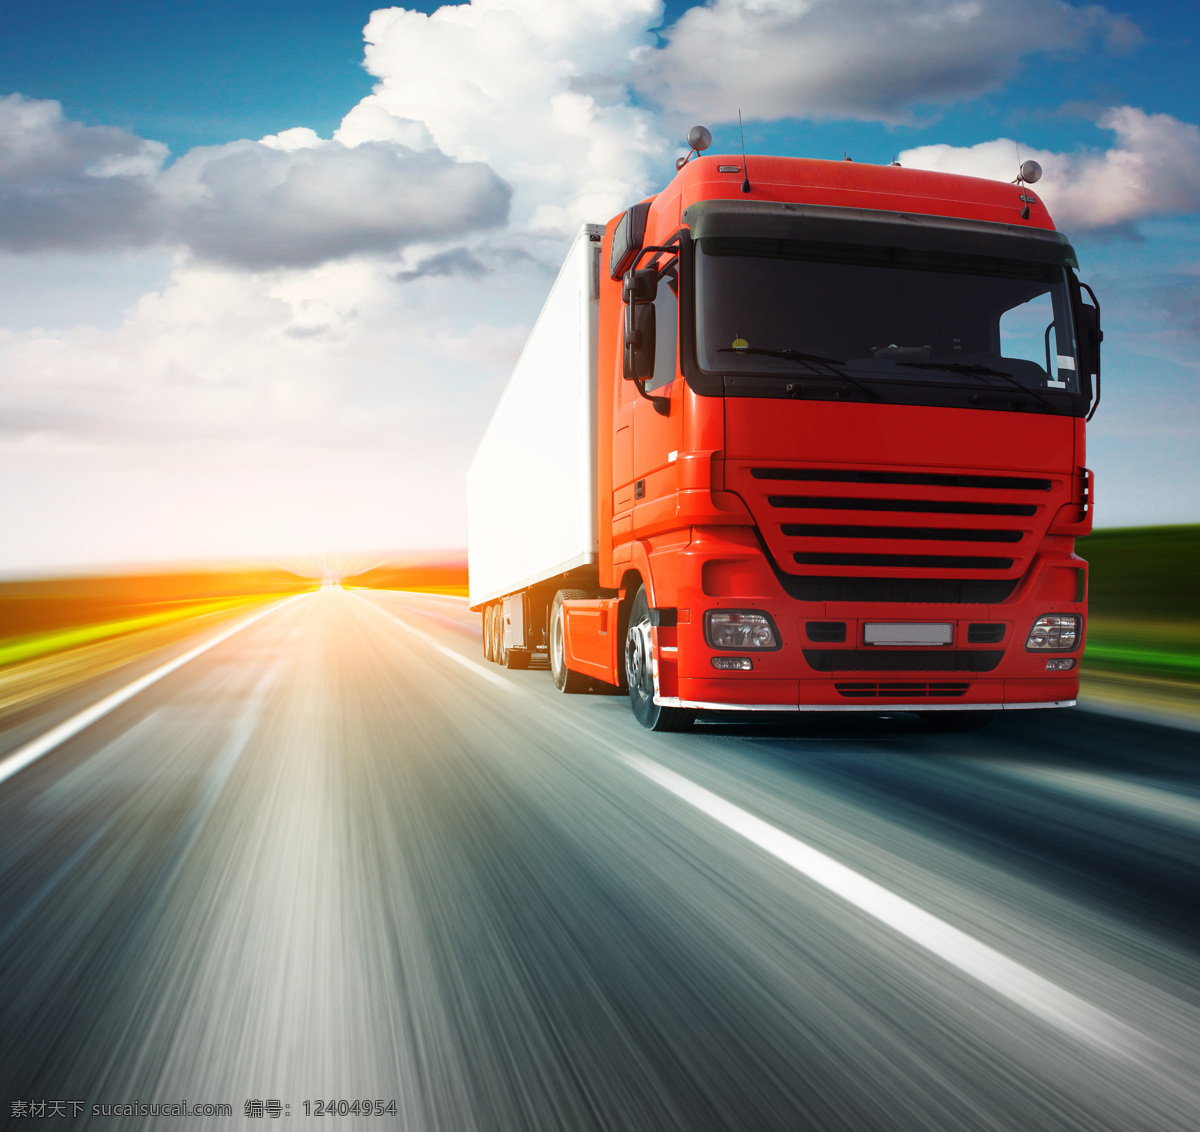 公路 上 飞驰 红色 重型 货车 重型货车 车辆 货运 运输 交通工具 汽车图片 现代科技